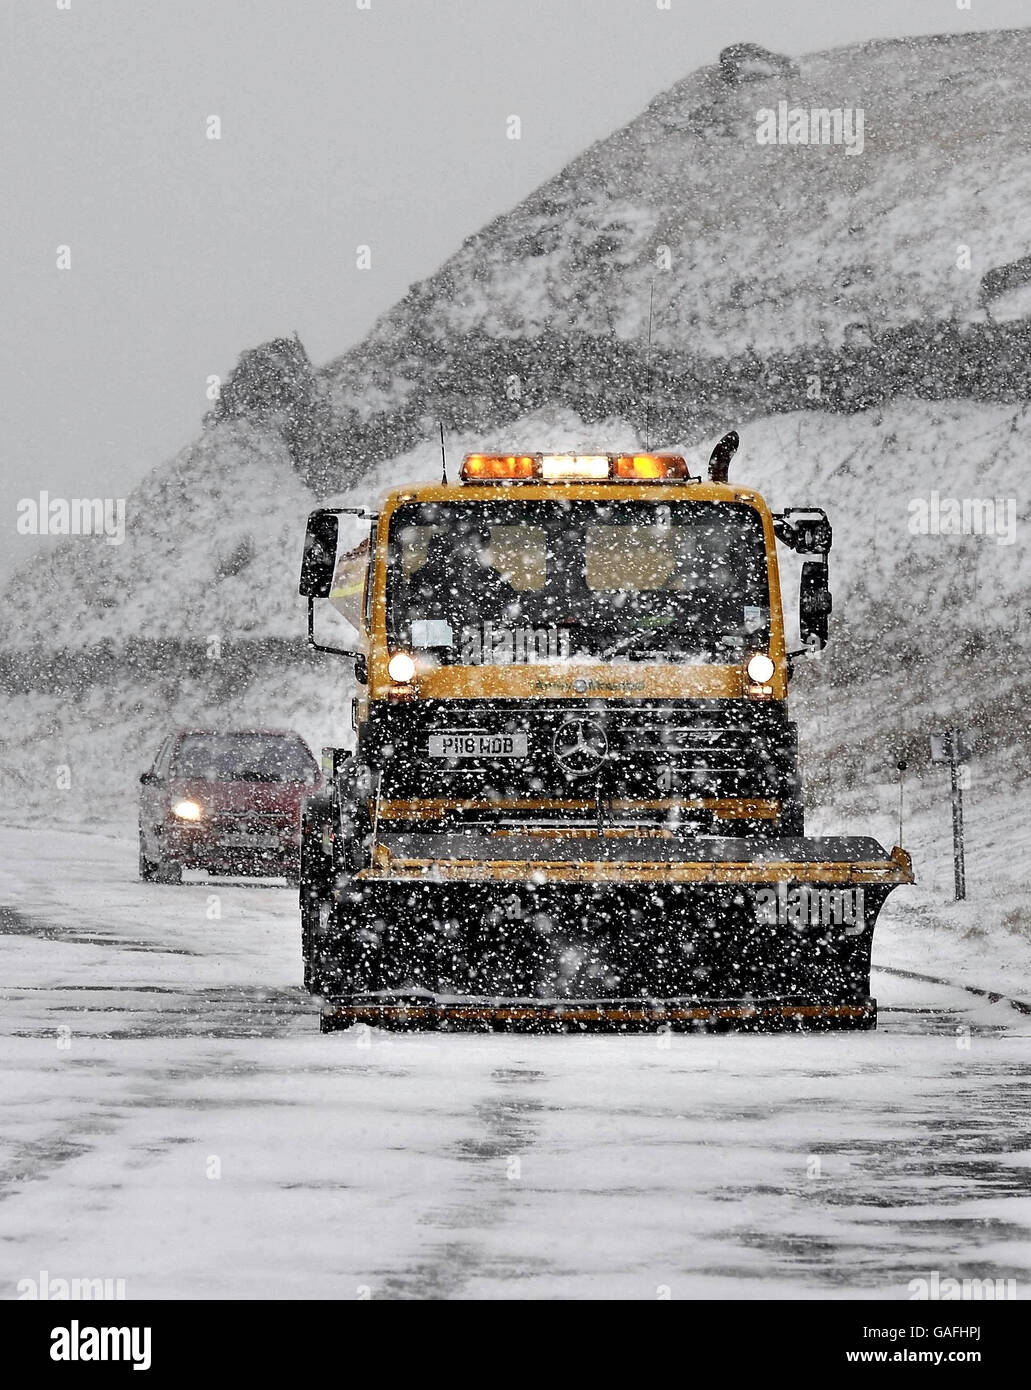 Schwierige Bedingungen auf den Straßen von Nordostengland heute, da Schneepflüge arbeiten, um Trans Pennine Routen wie die A66 in Schneesturm Bedingungen offen zu halten. Stockfoto